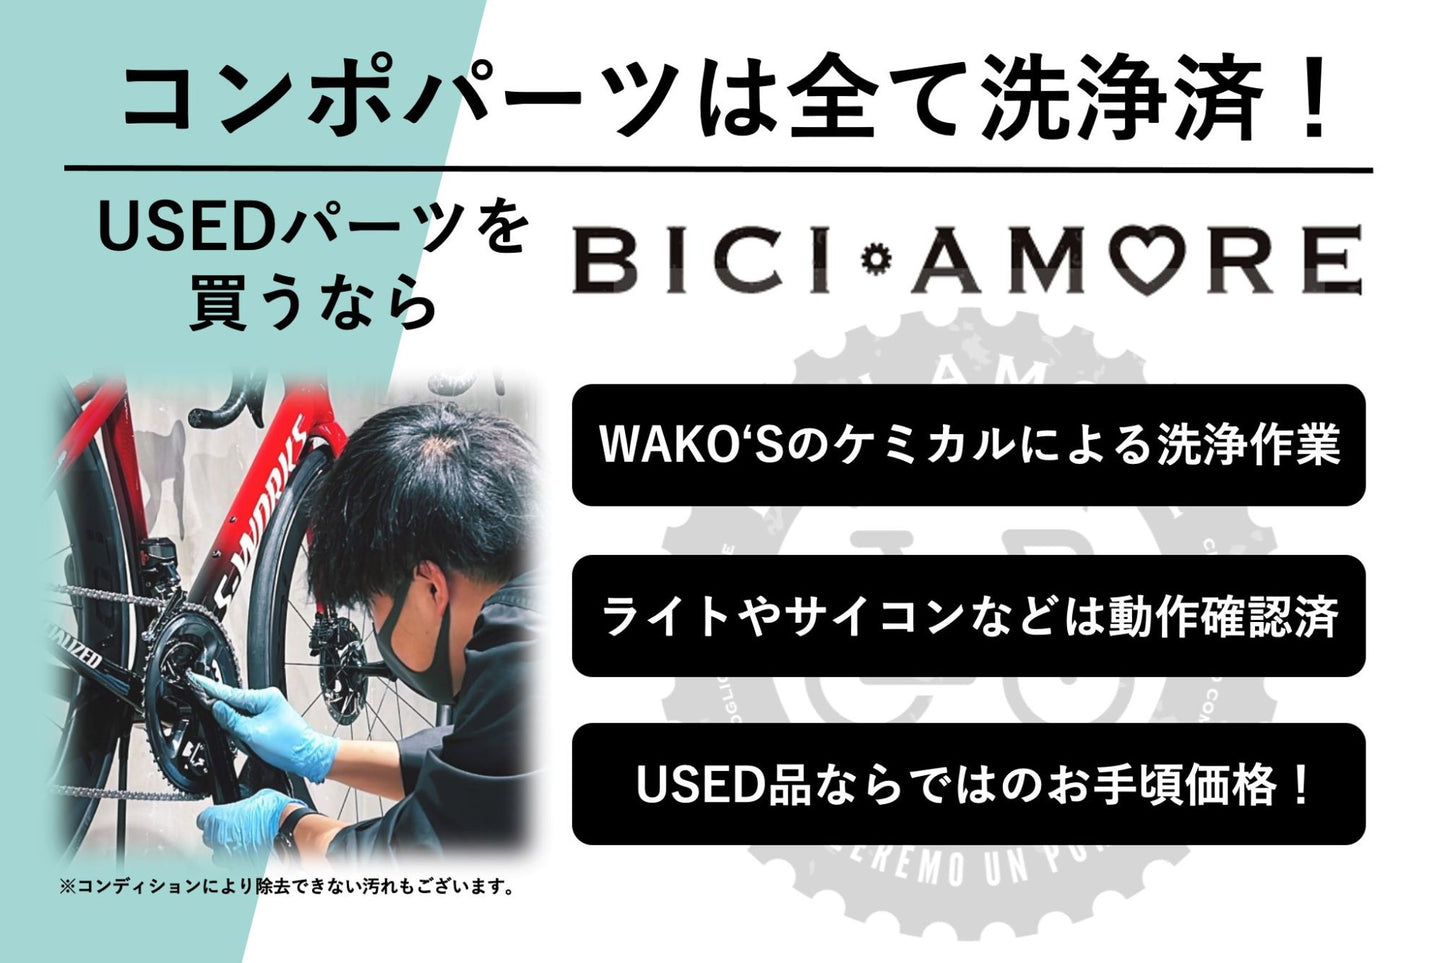 HF037 シマノ SHIMANO 105 FC-R7000 クランクセット 11S 170mm 50/34T